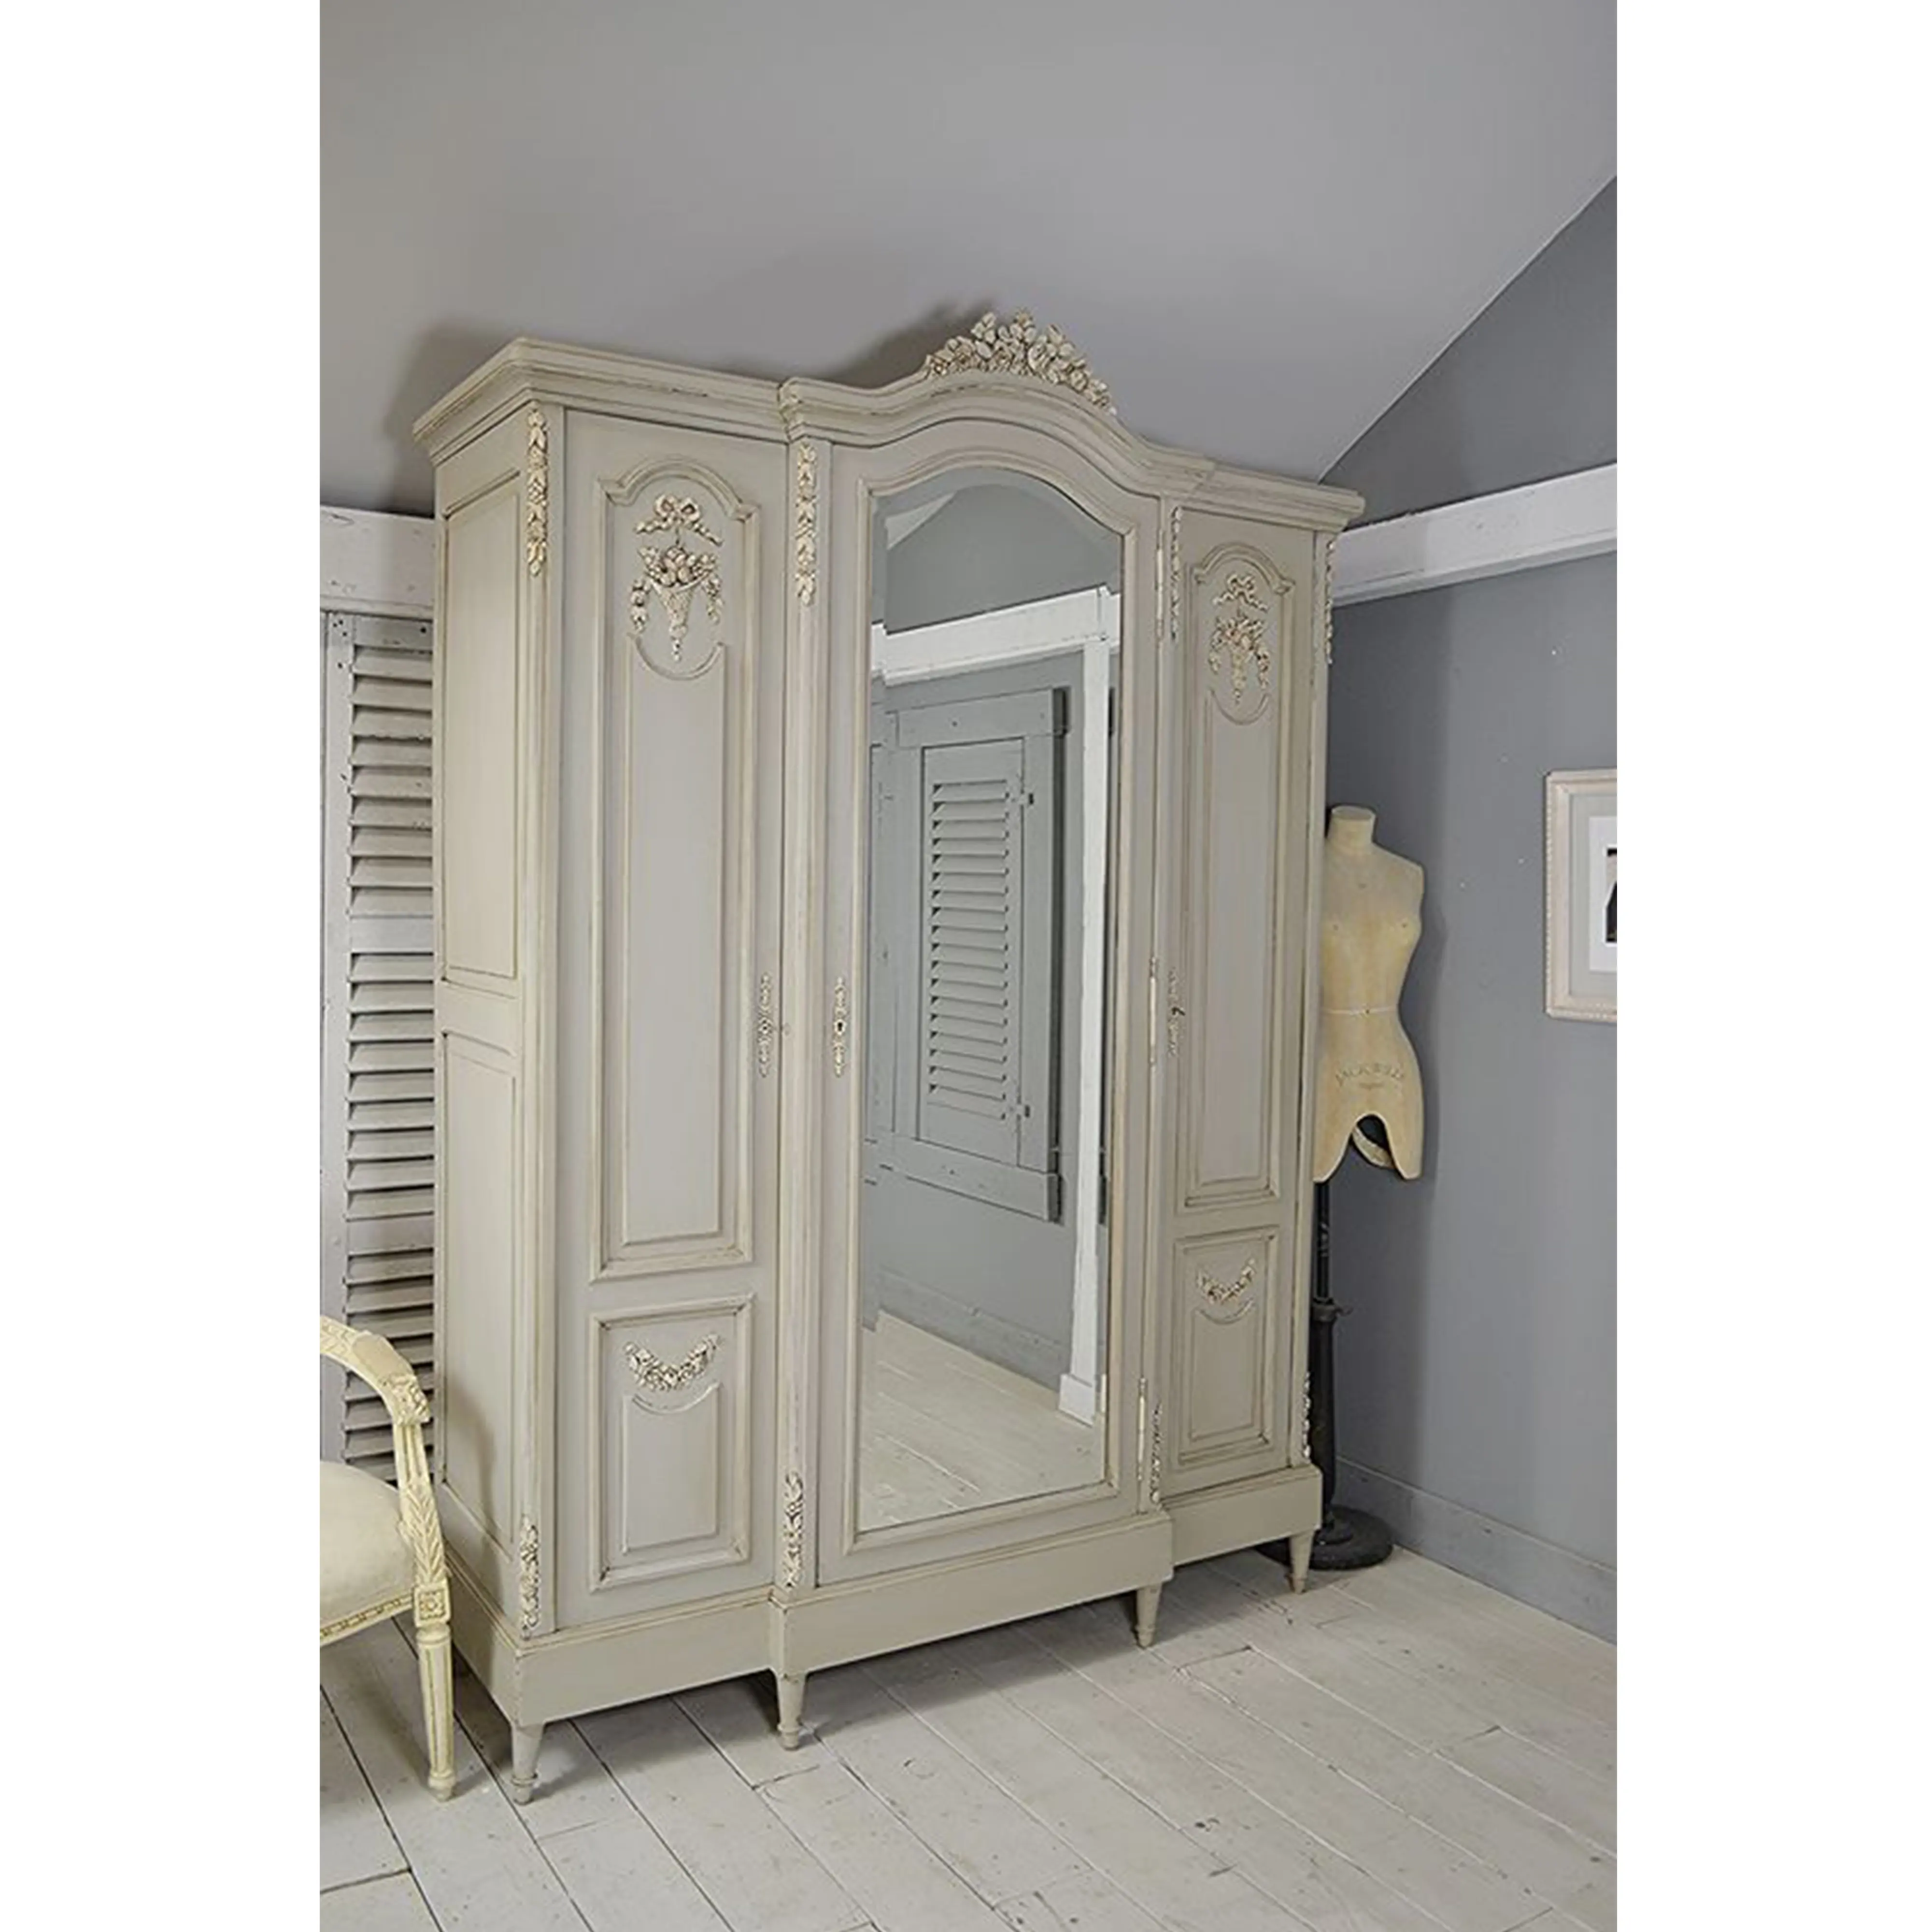 スカンジナビア製ワードローブ無垢材白色高級ロイヤルヨーロッパスタイル寝室家具ベストセラー